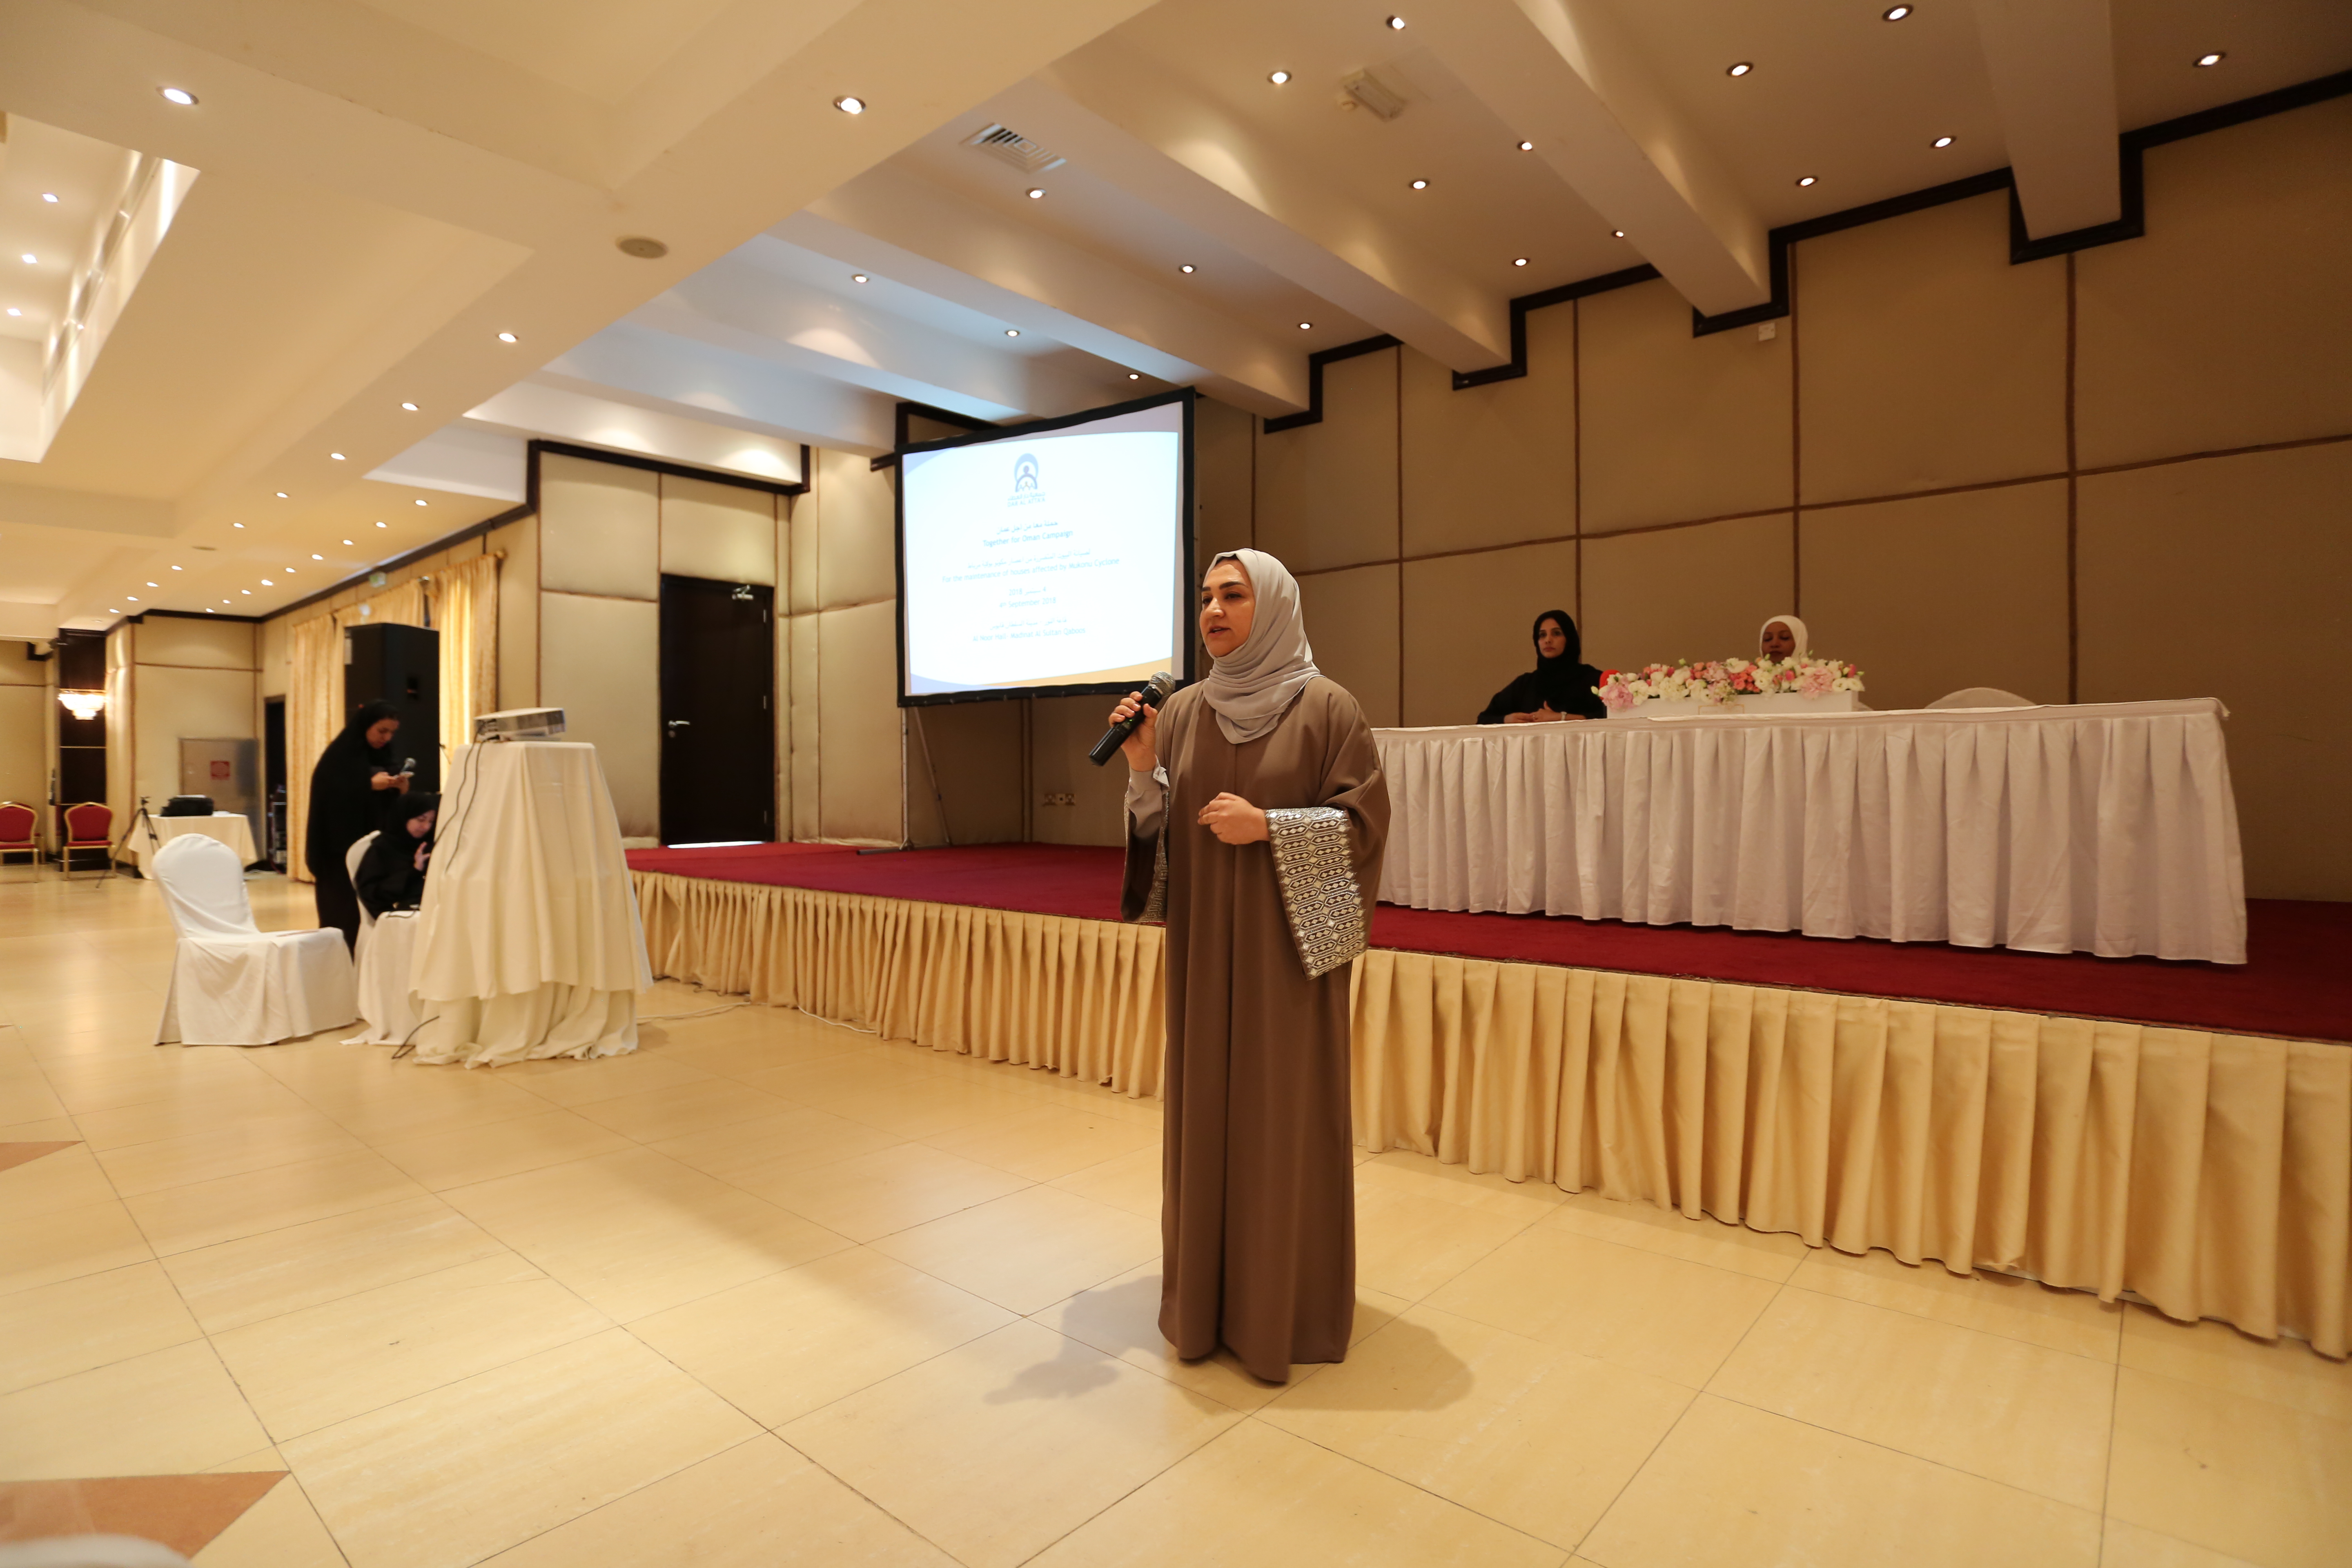 دار العطاء تعلن عن آلية إعداد وتجهيز وتنفيذ حملة "معا من أجل عمان"